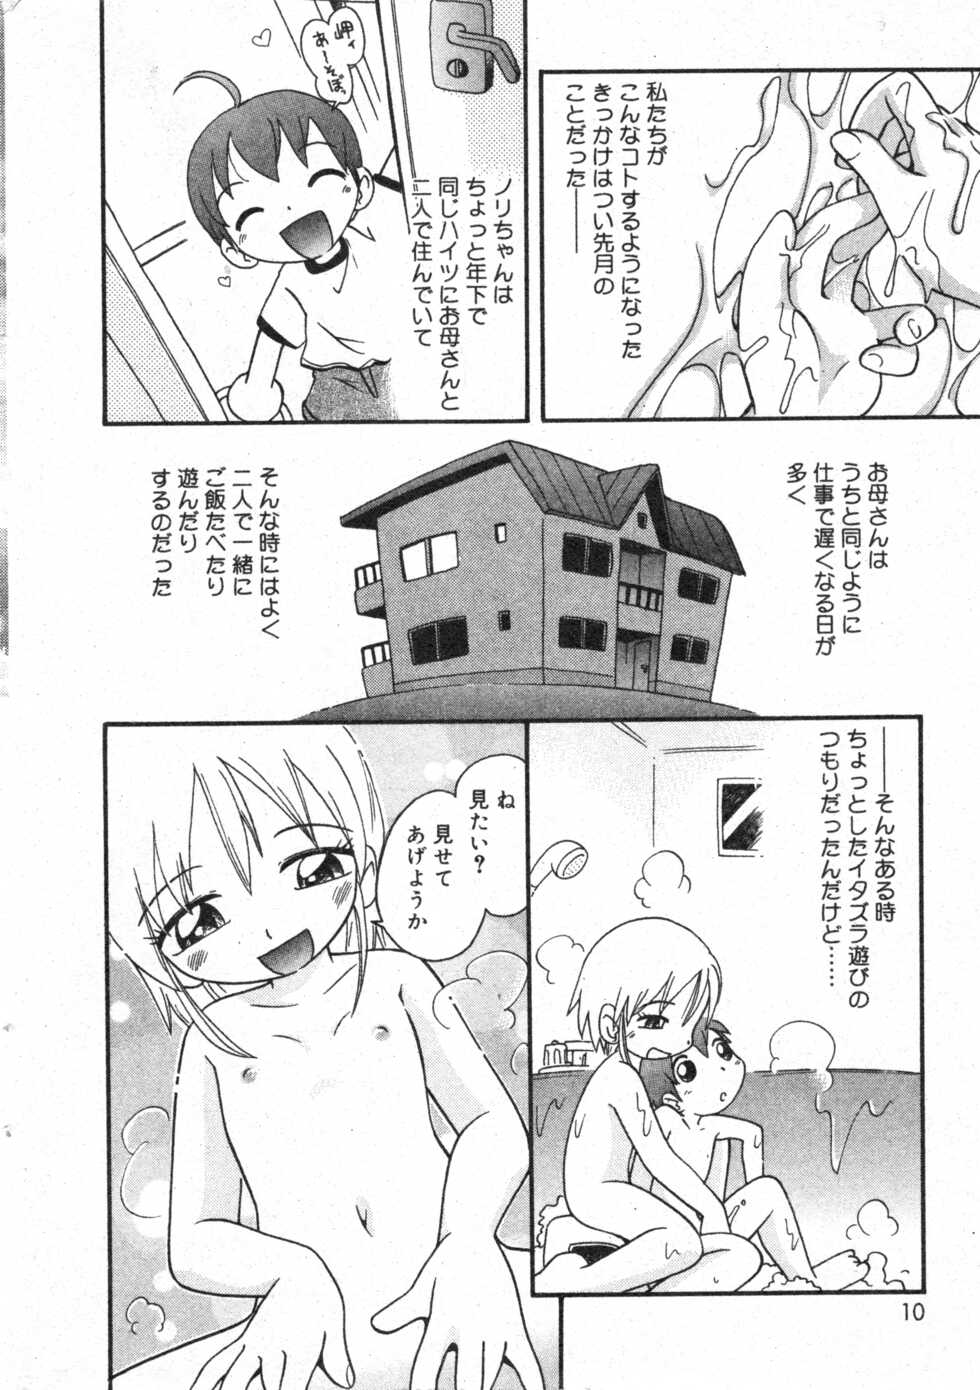 COMIC Minimon Vol. 8 (2003.8) - Page 10